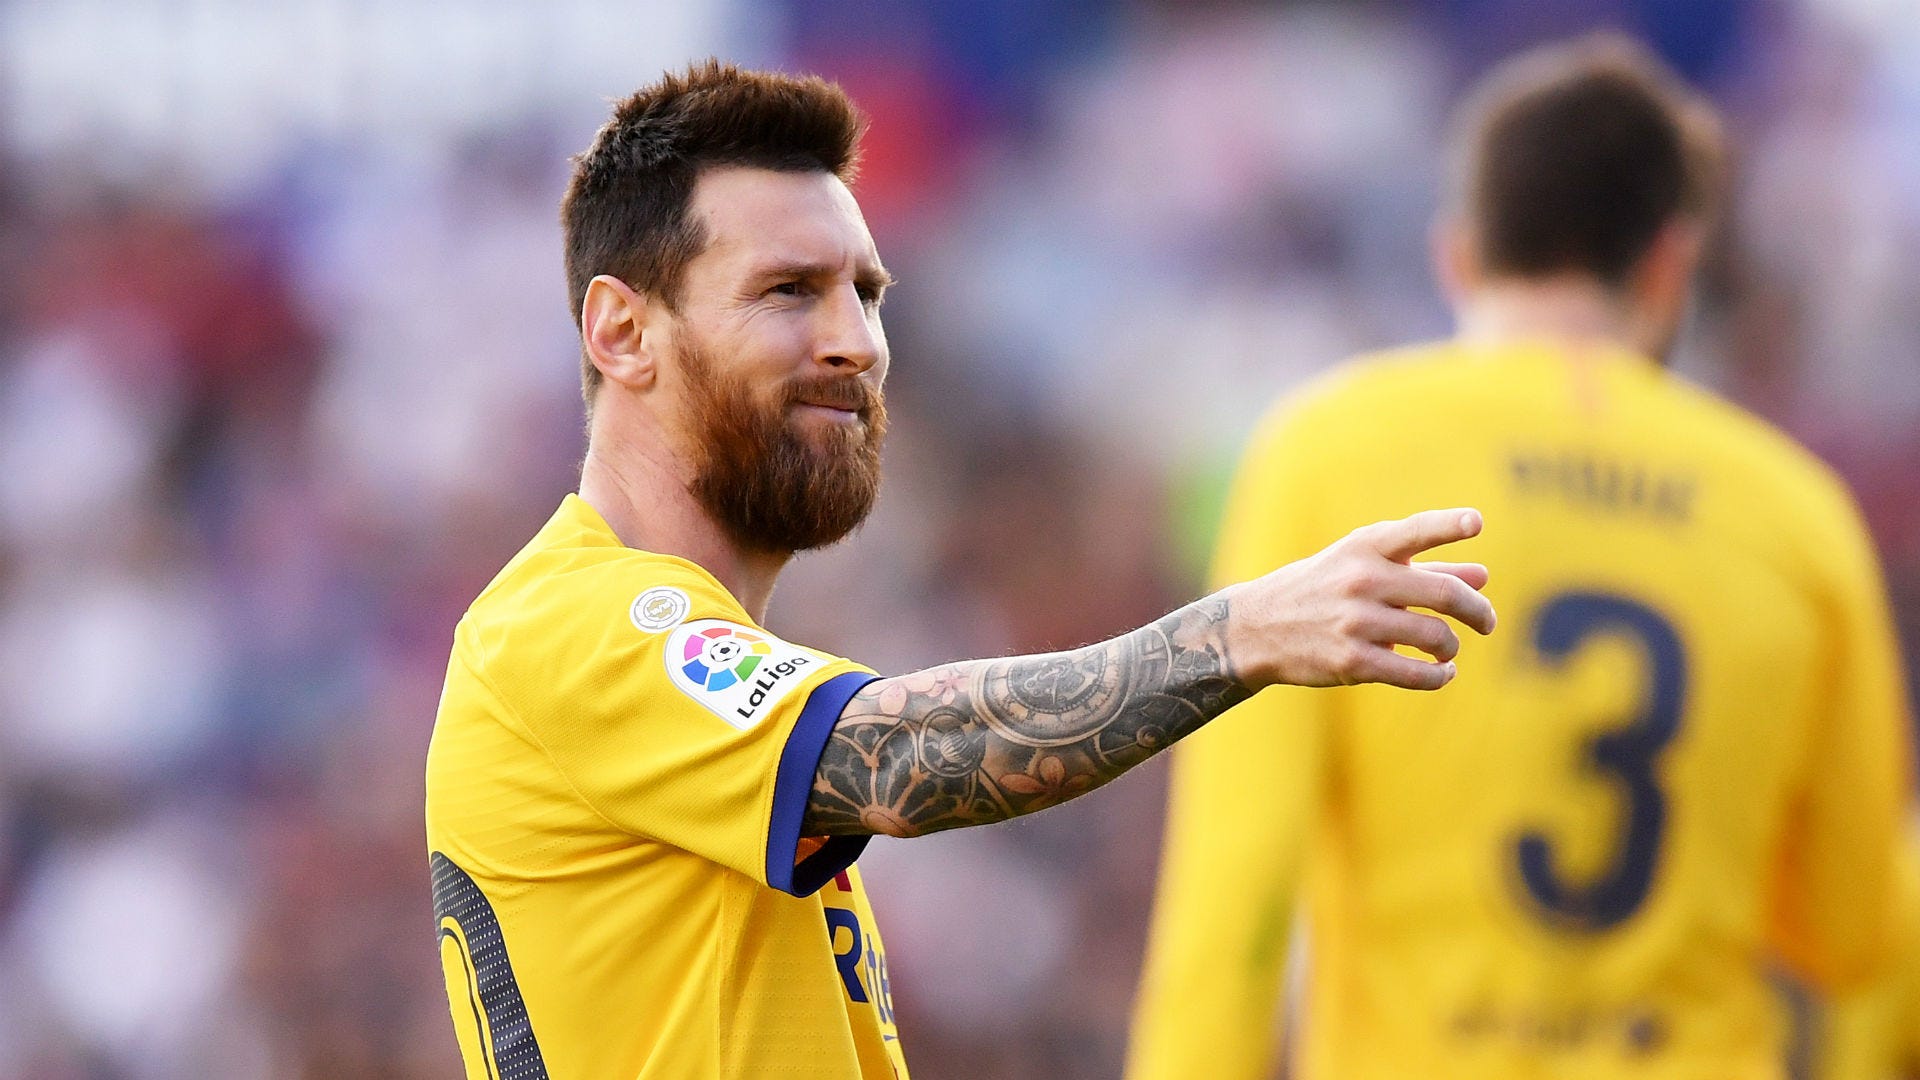 Hãy cùng chào đón Messi ký hợp đồng với Barcelona thông qua ảnh nền độc đáo. Hãy theo dõi và tận hưởng cảm giác như đang rời xa cuộc sống thường nhật và đến với thế giới bóng đá!